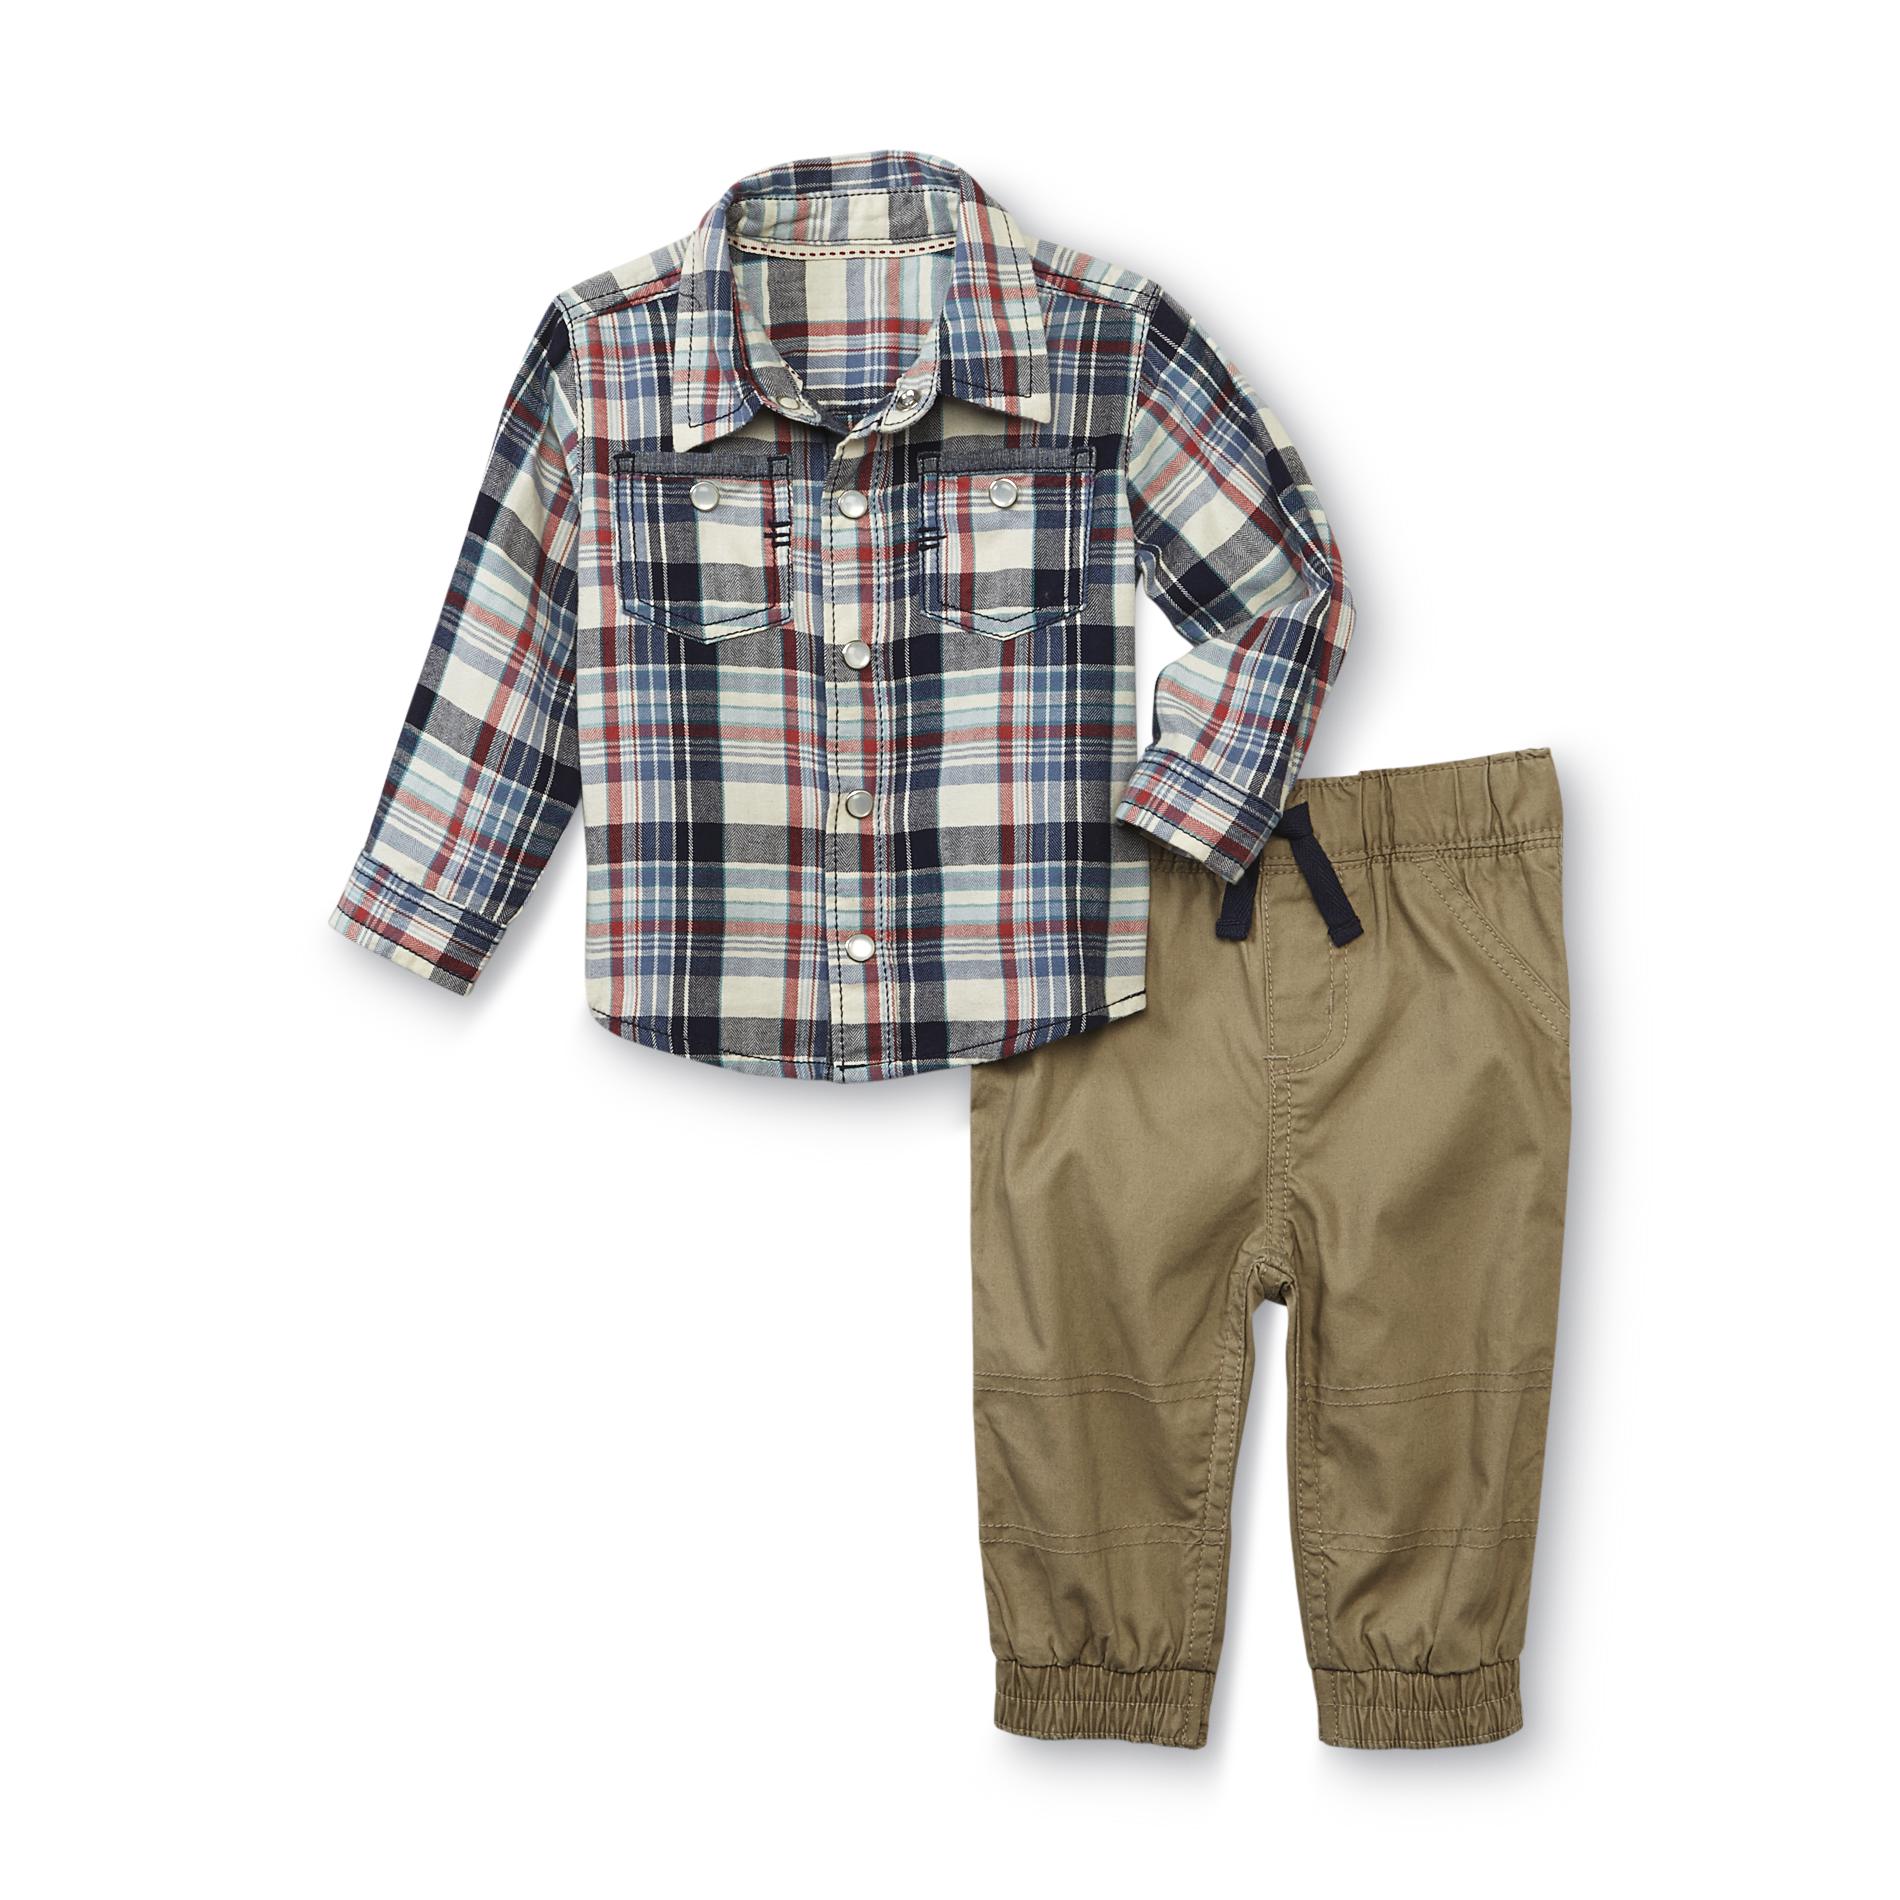 Route 66 Newborn Boy's Flannel Shirt & Khaki Pants - Plaid